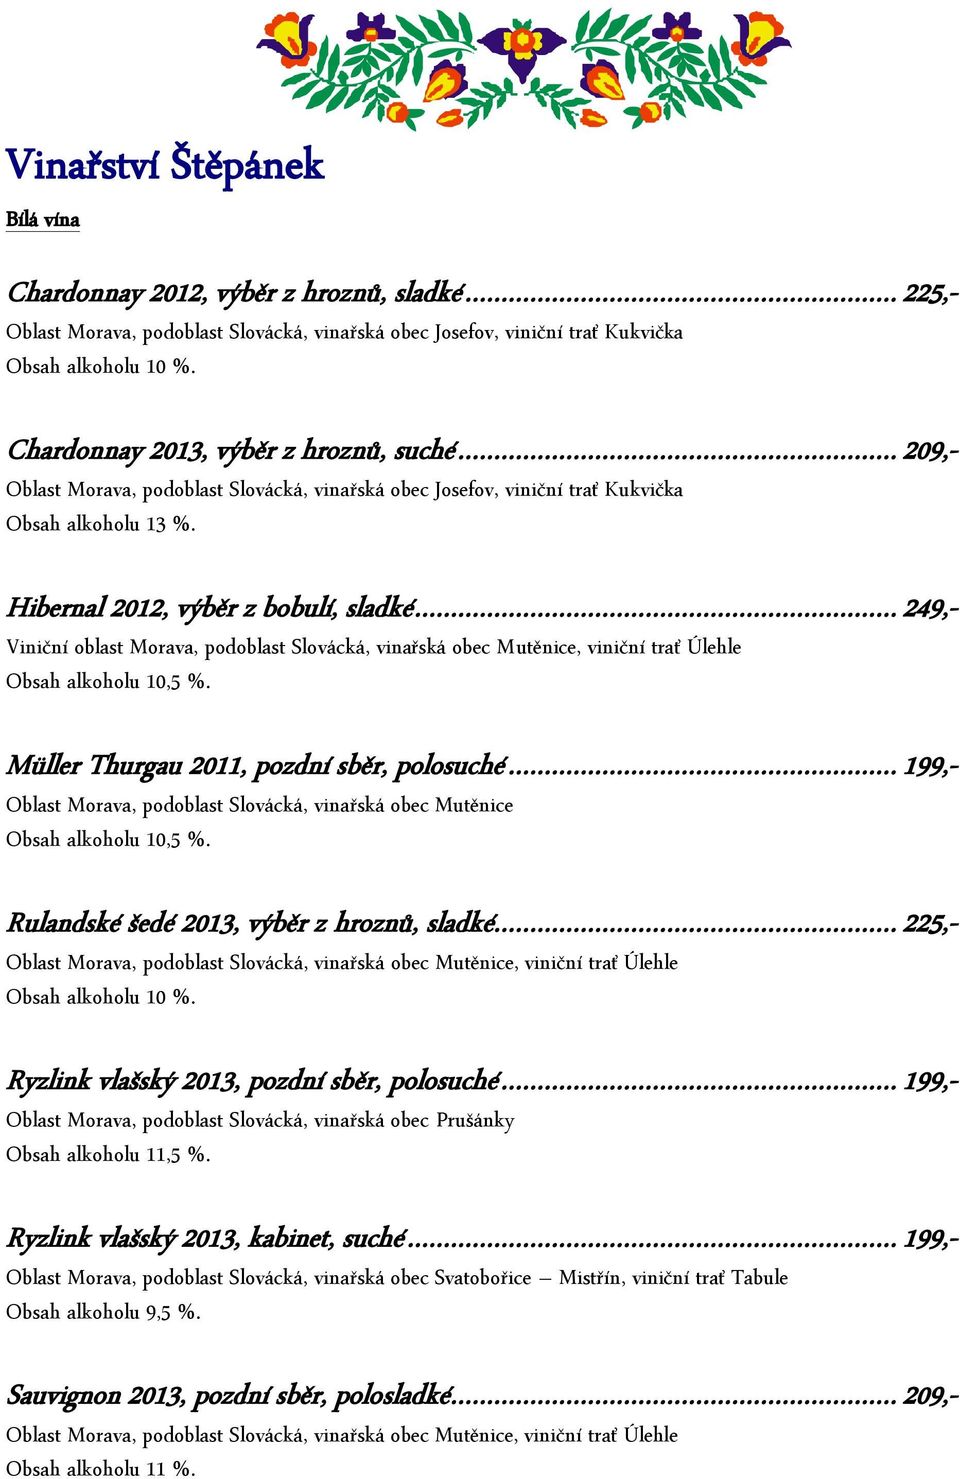 .. 249,- Viniční oblast Morava, podoblast Slovácká, vinařská obec Mutěnice, viniční trať Úlehle Obsah alkoholu 10,5 %. Müller Thurgau 2011, pozdní sběr, polosuché.